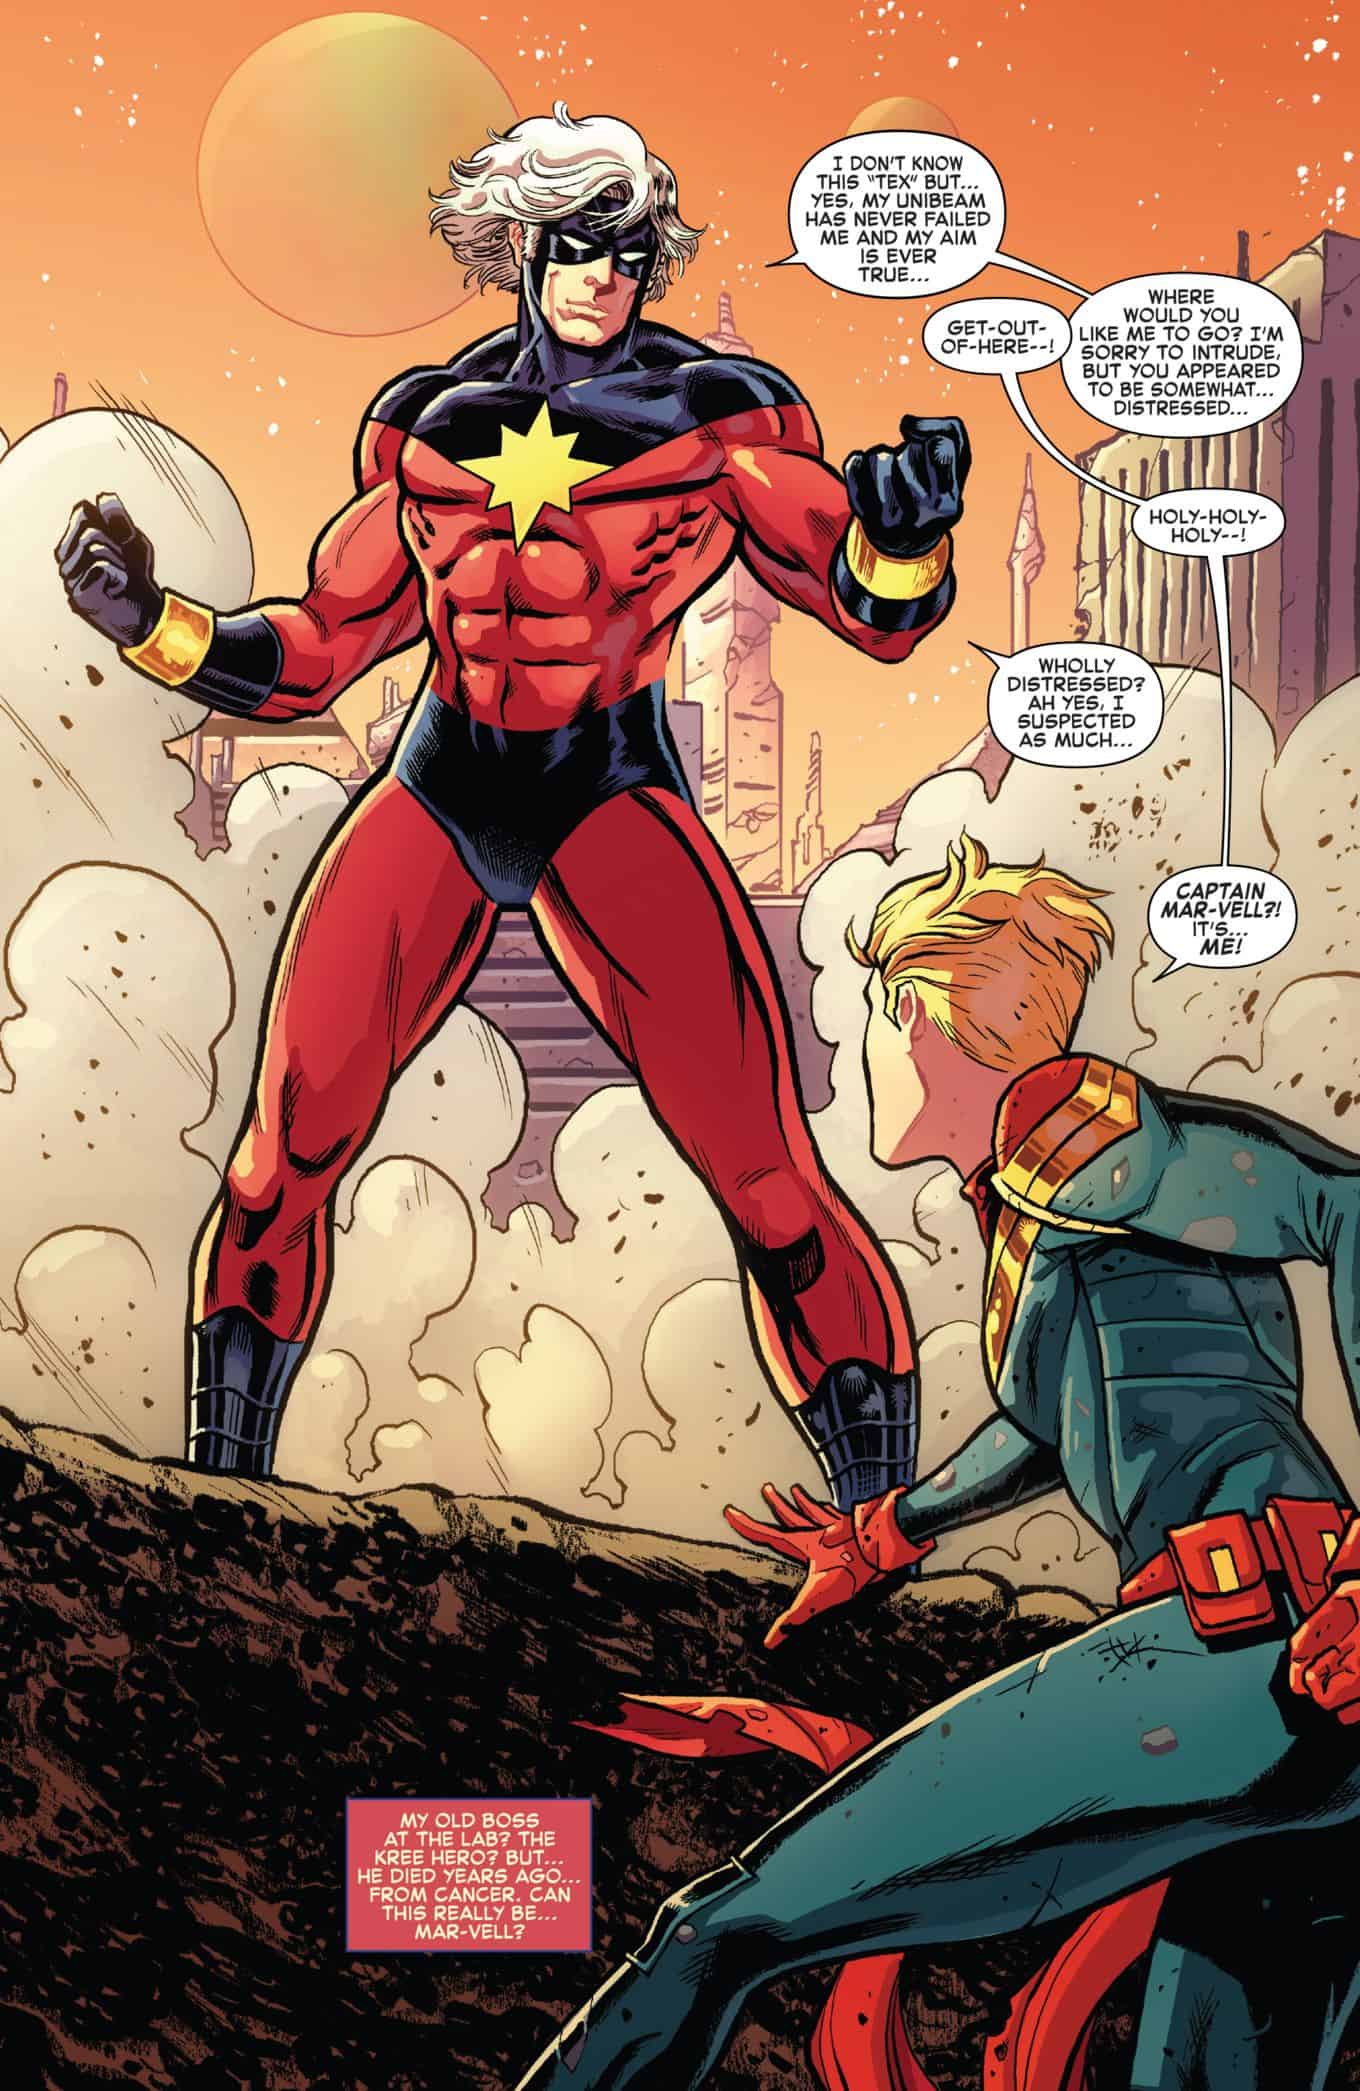 Generations-Captain-Marvel-Capt-Mar-vell-1-The-Bravest-Marvel-Comics-Legacy-spoilers-7.jpg